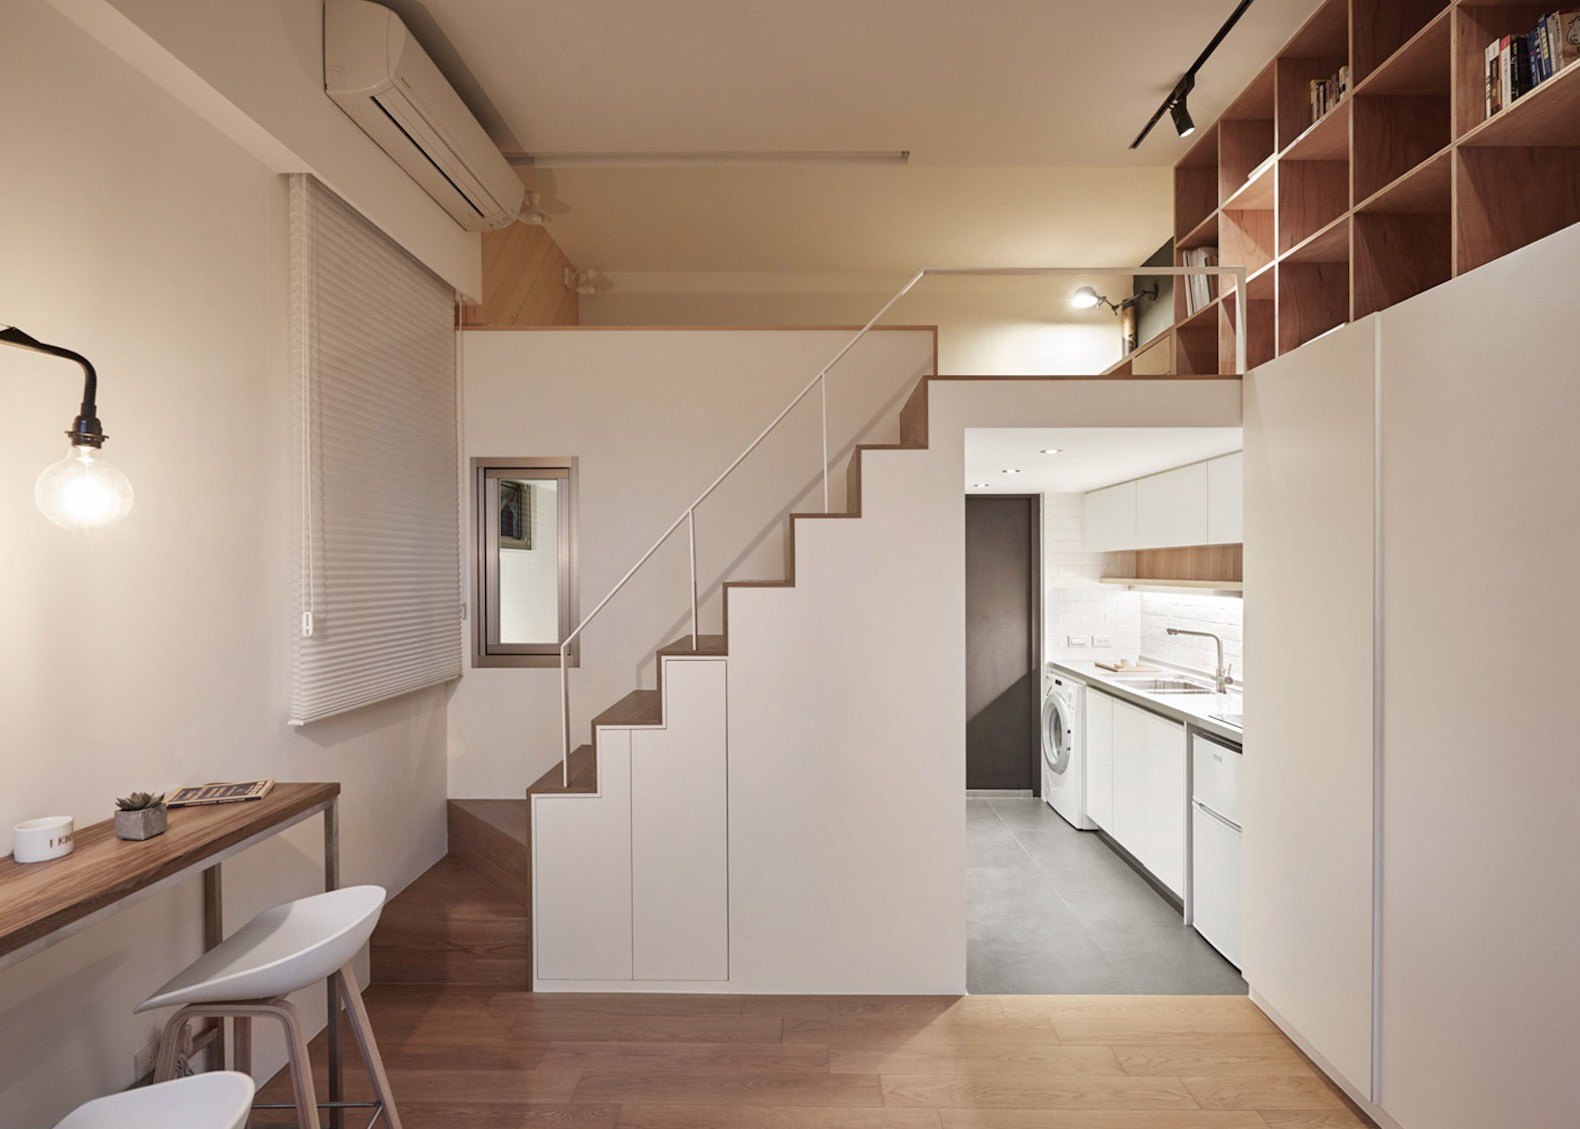 Phòng khách, phòng bếp được bố trí riêng biệt, ngăn cách bởi cầu thang